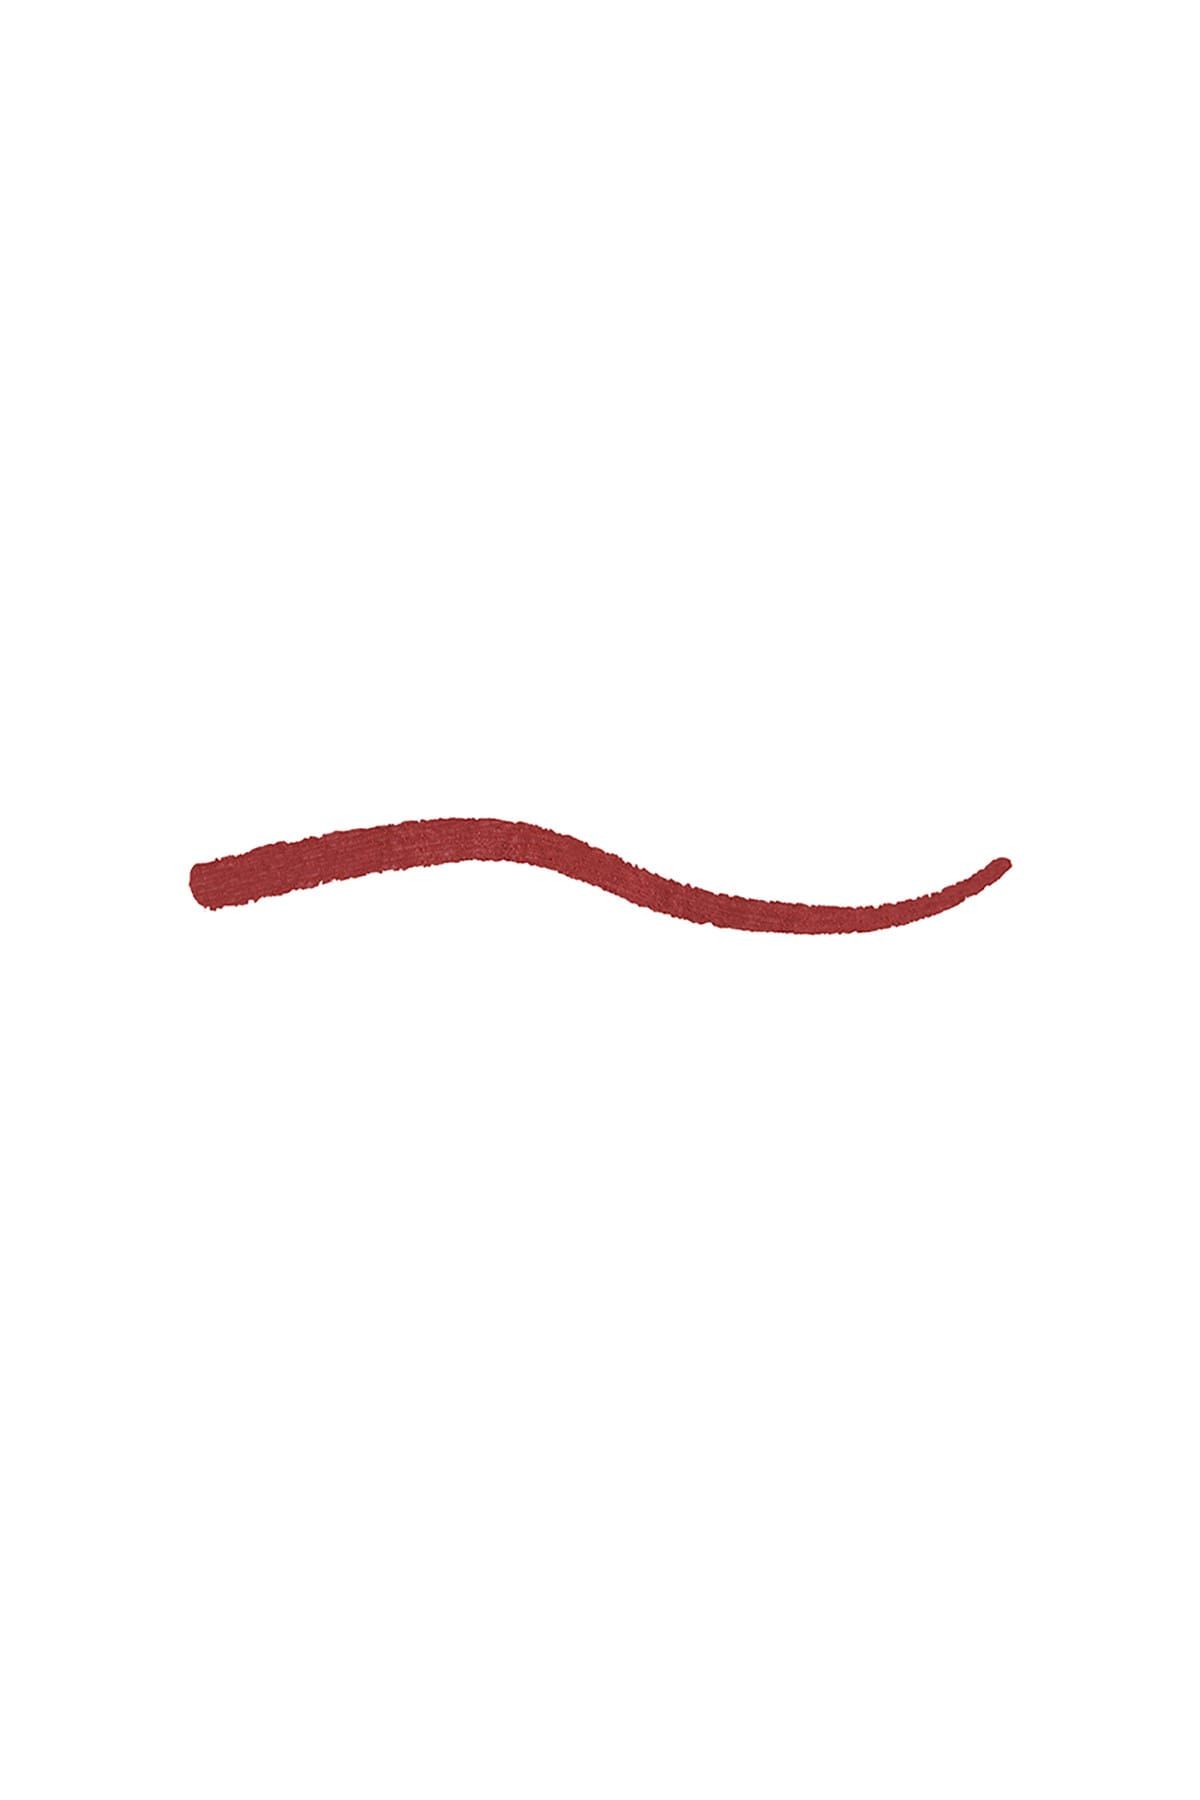 KIKO مداد لب Smart Fusion بافت نرم و روان شماره 535 رنگ قرمز اسکارلت